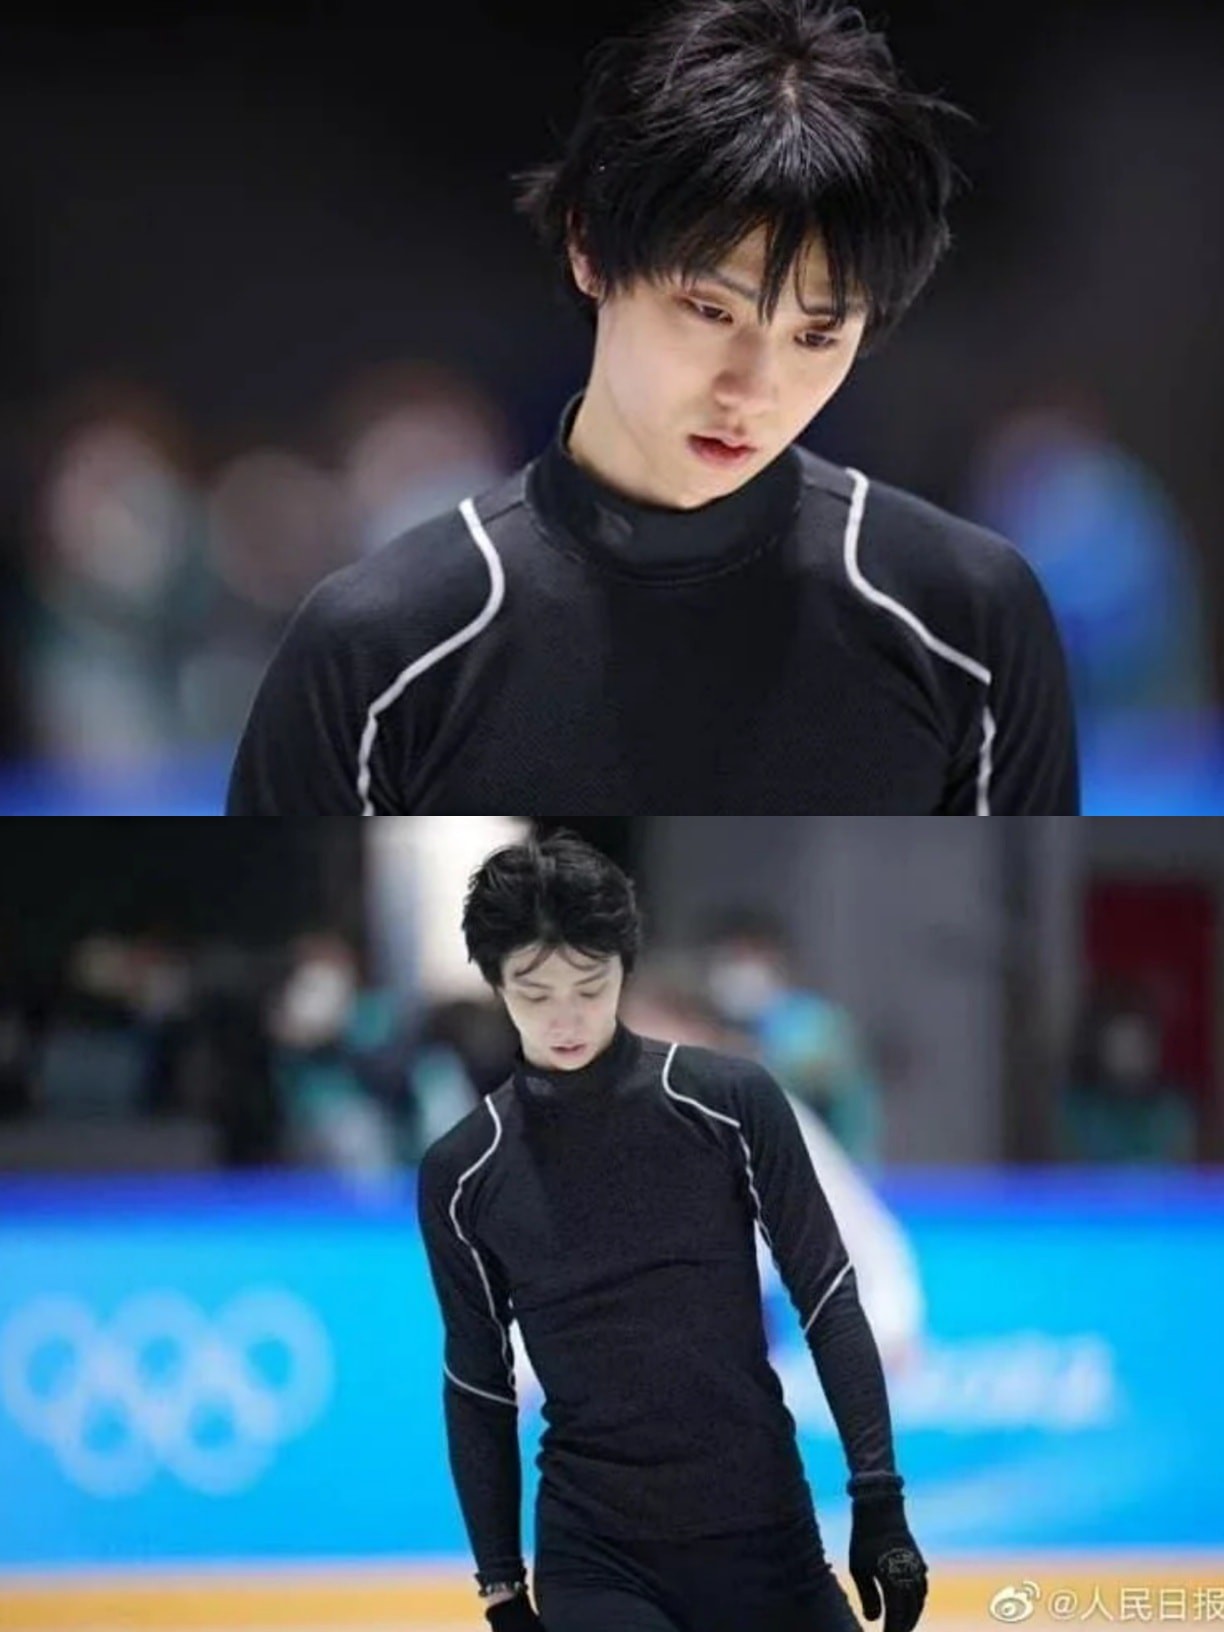 Huyền thoại trượt băng nghệ thuật của Nhật Bản - Hanyu Yuzuru bị ngã khi thực hiện cú nhảy 4A và 4S tại Olympic mùa đông 2022 nhưng vẫn được Netizen Trung và Hàn hết lòng ủng hộ